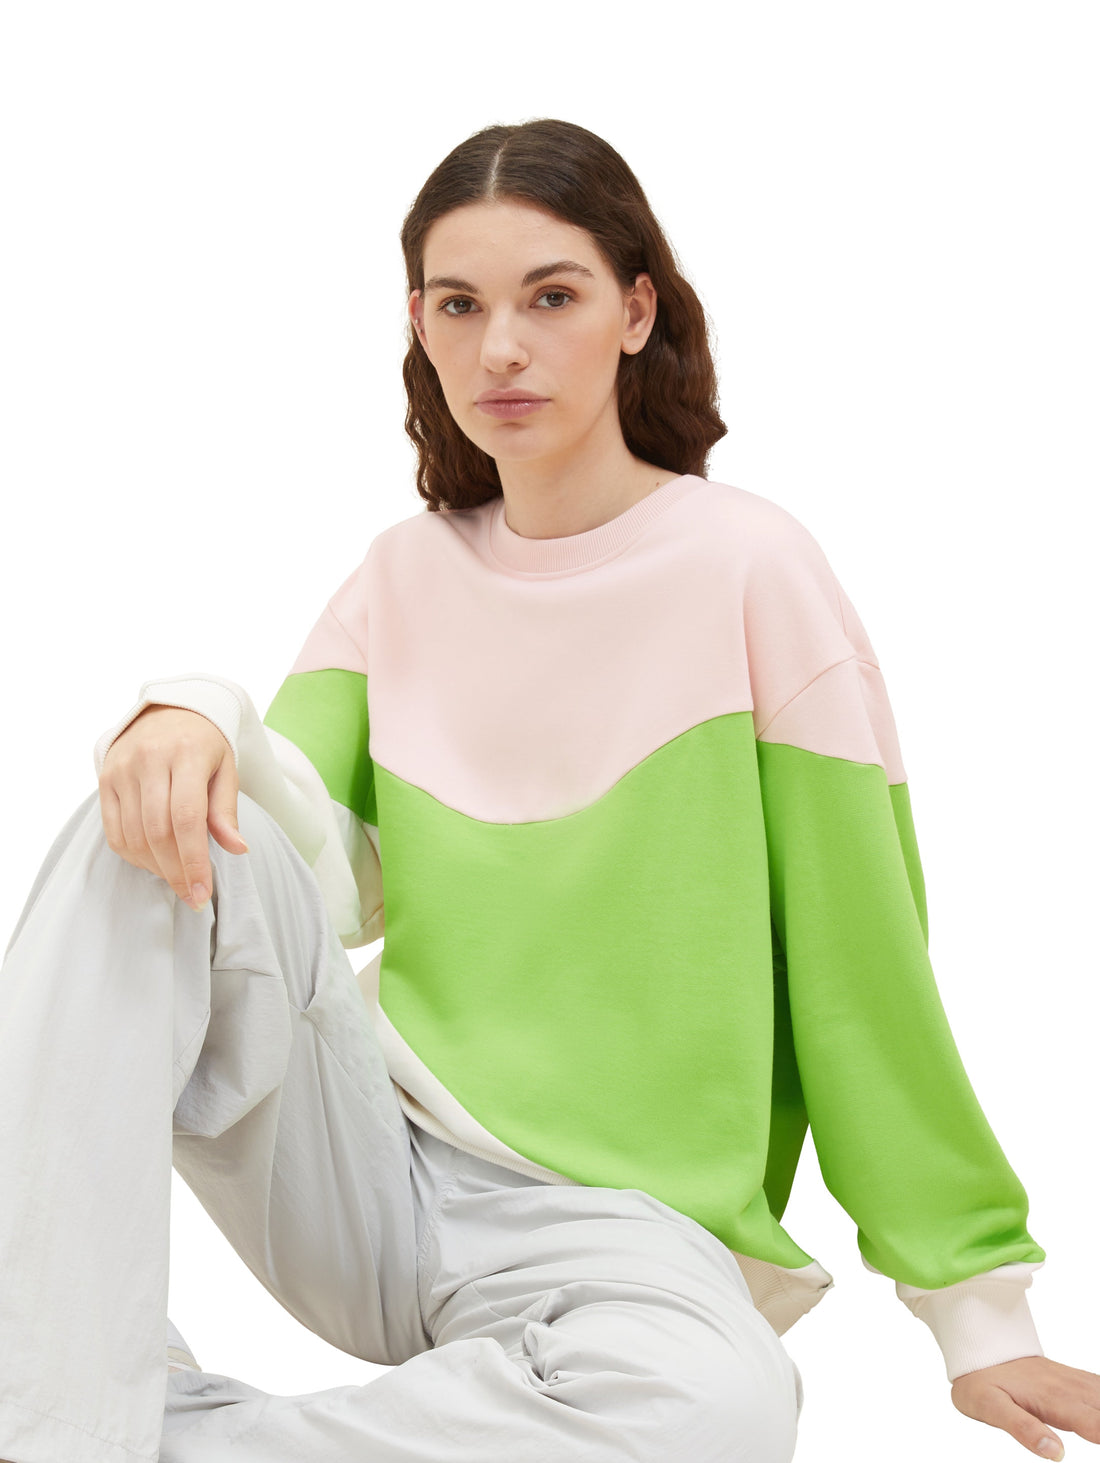 Oversized Sweatshirt With Color Block Design_1038318_32622_02